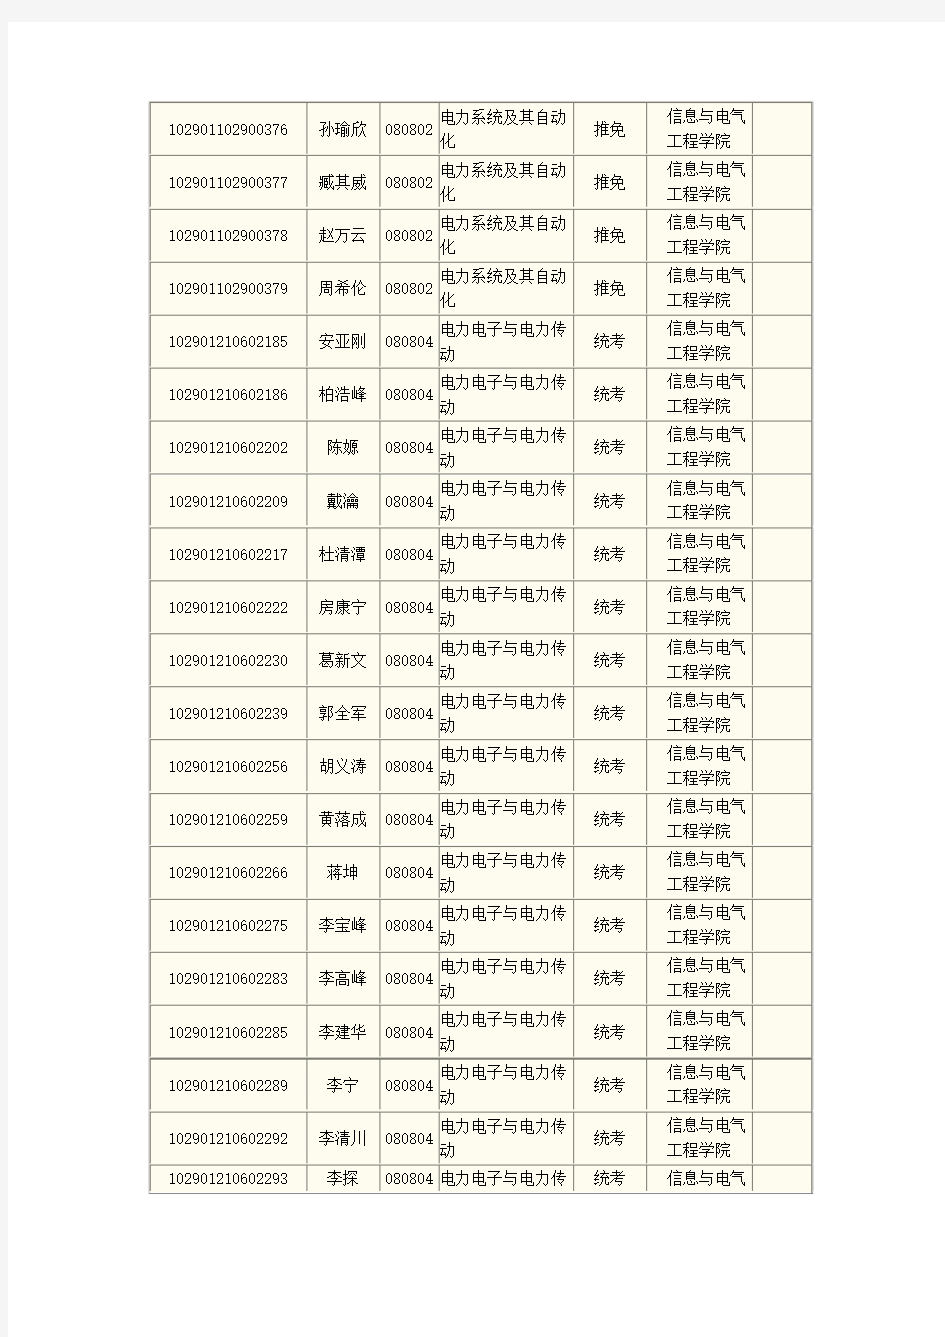 中国矿业大学2011研究生录取名单